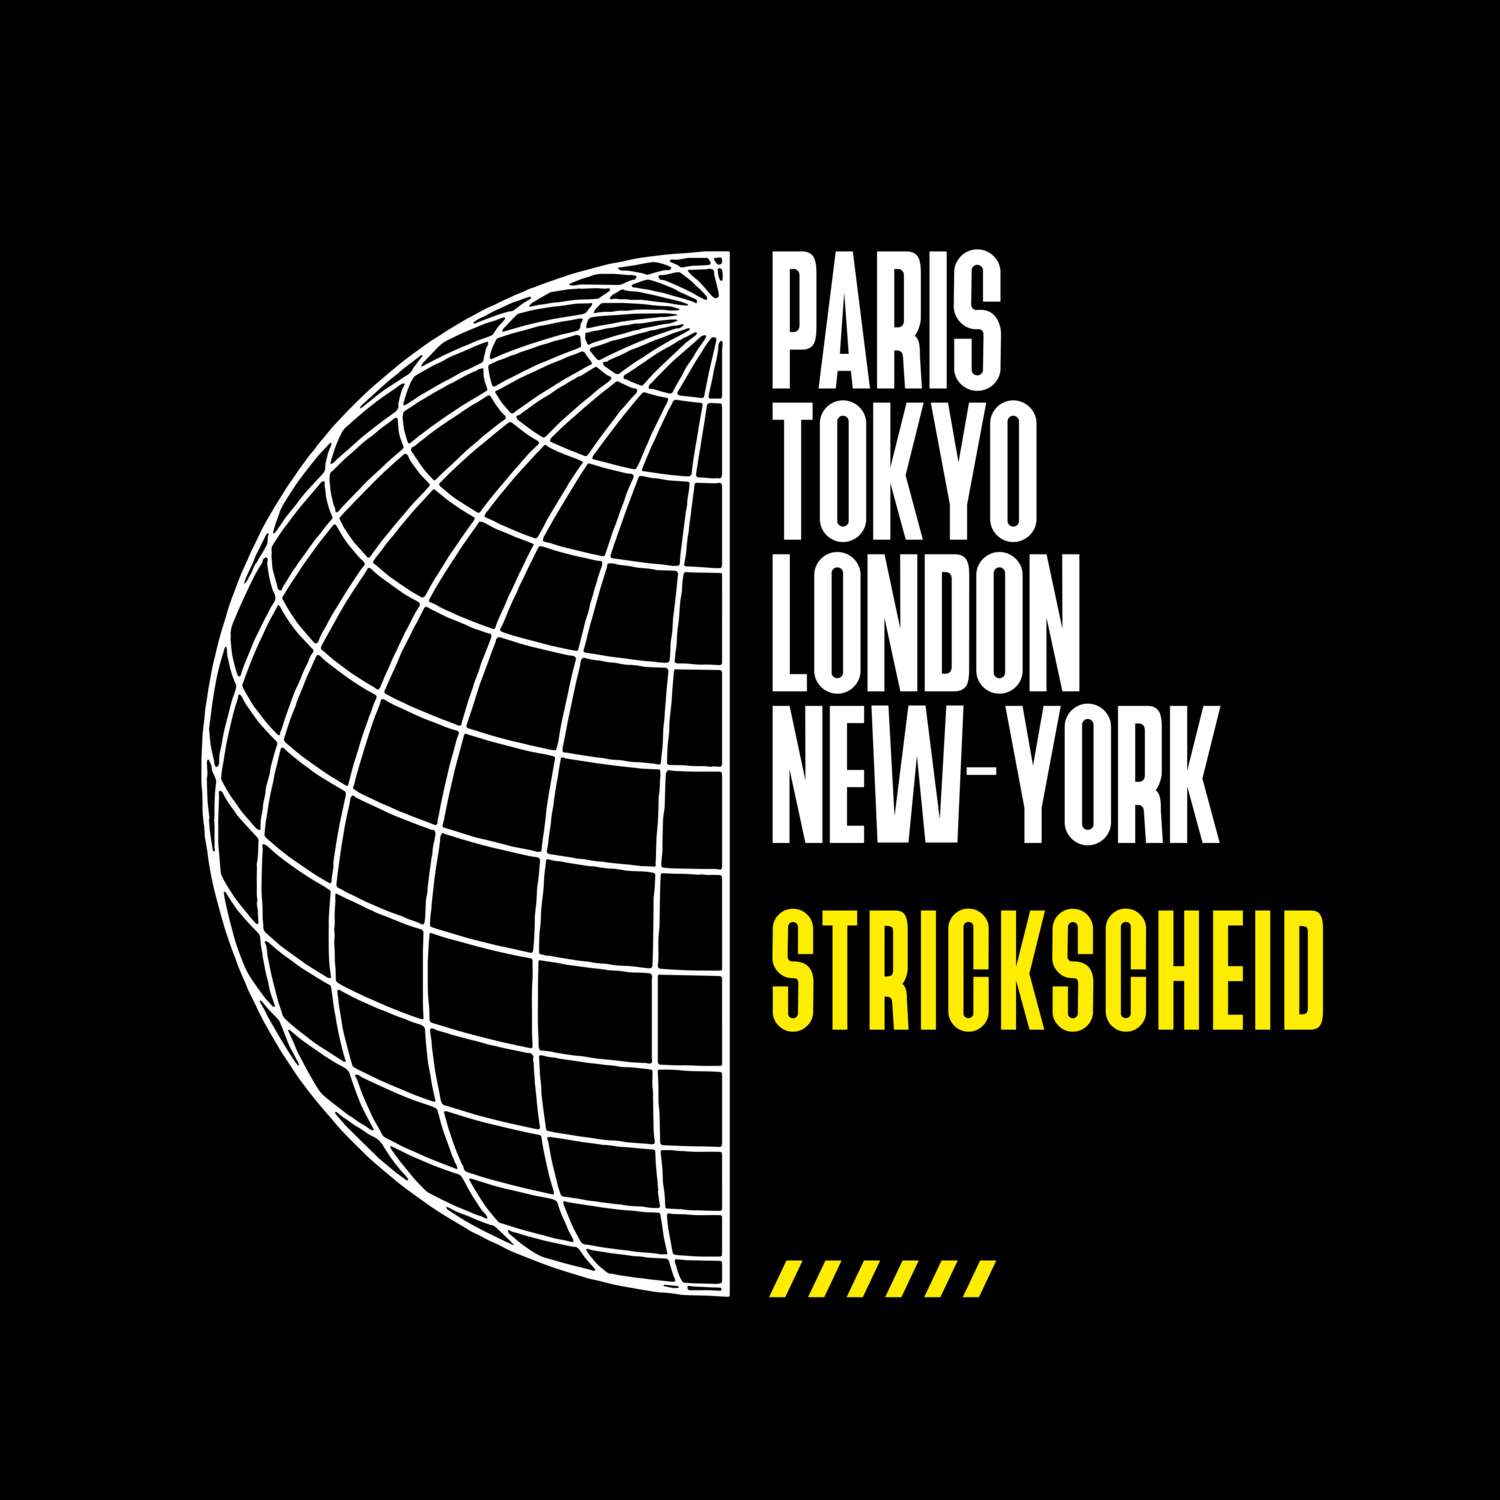 Strickscheid T-Shirt »Paris Tokyo London«